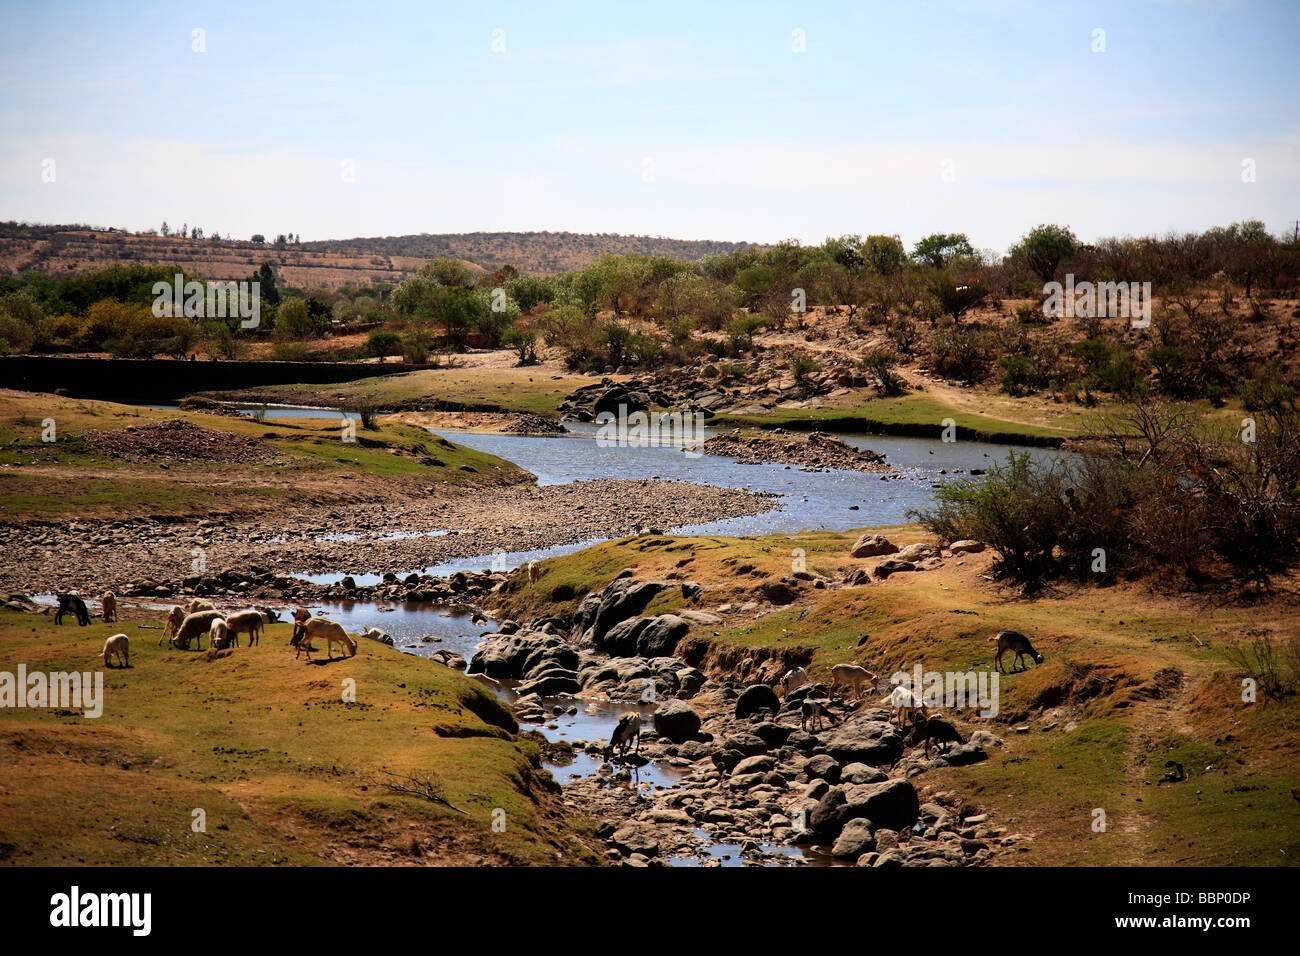 Paesaggio con fiume agnelli in una immagine di nostalgico ispira Deserto in pace splendidi orizzonti di vita selvaggia giornata di sole Foto Stock